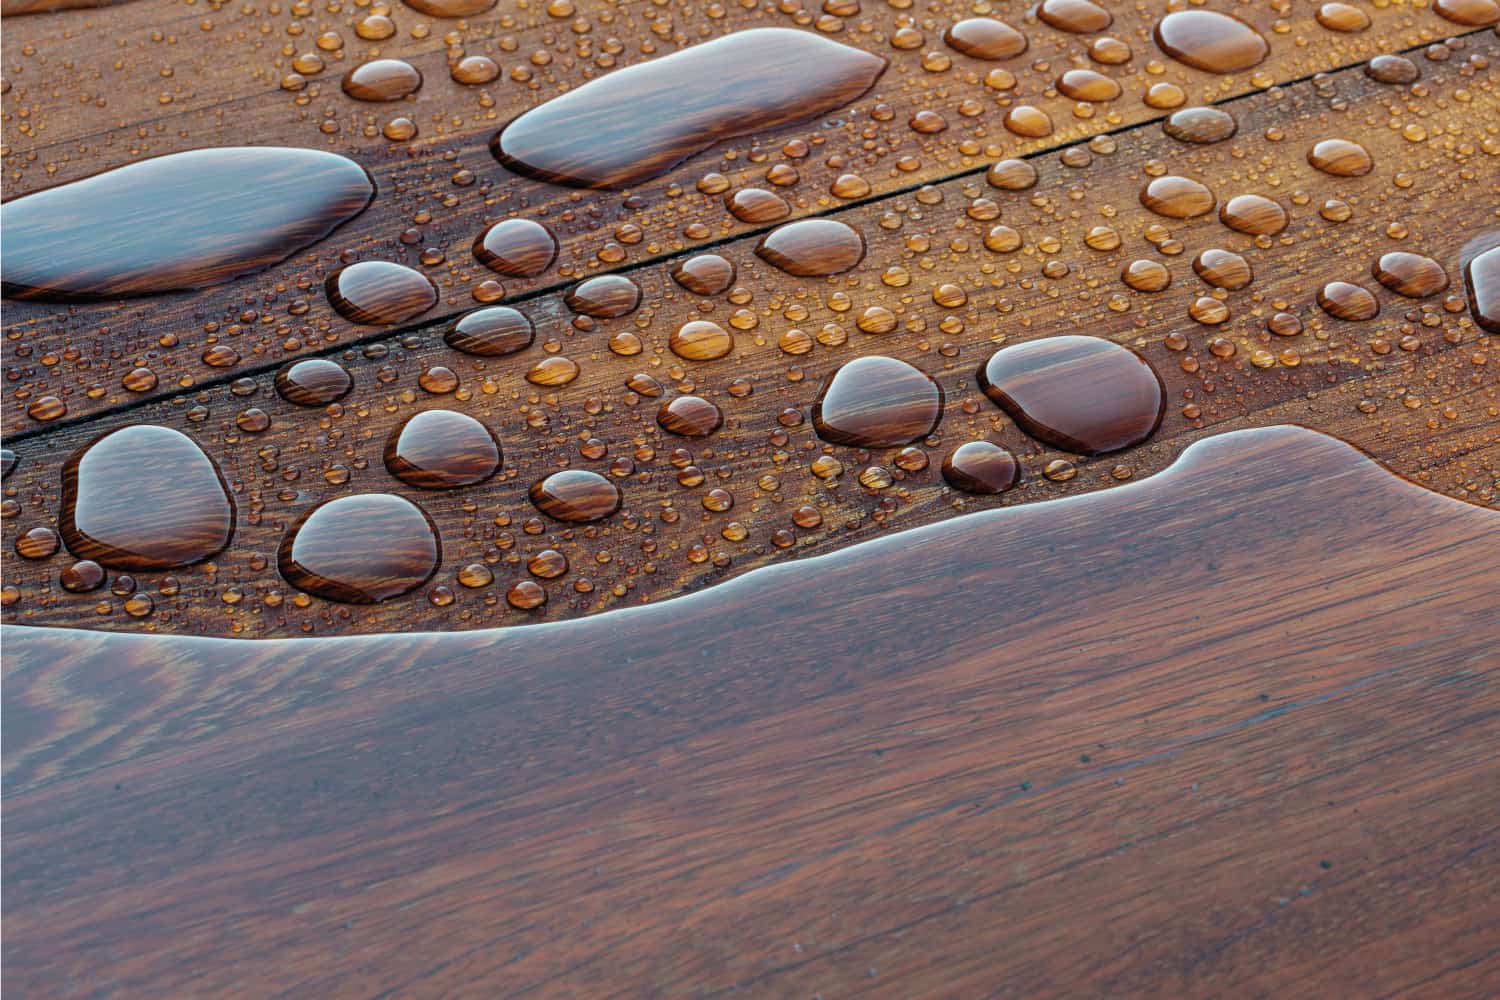 hardwood floor with water drops